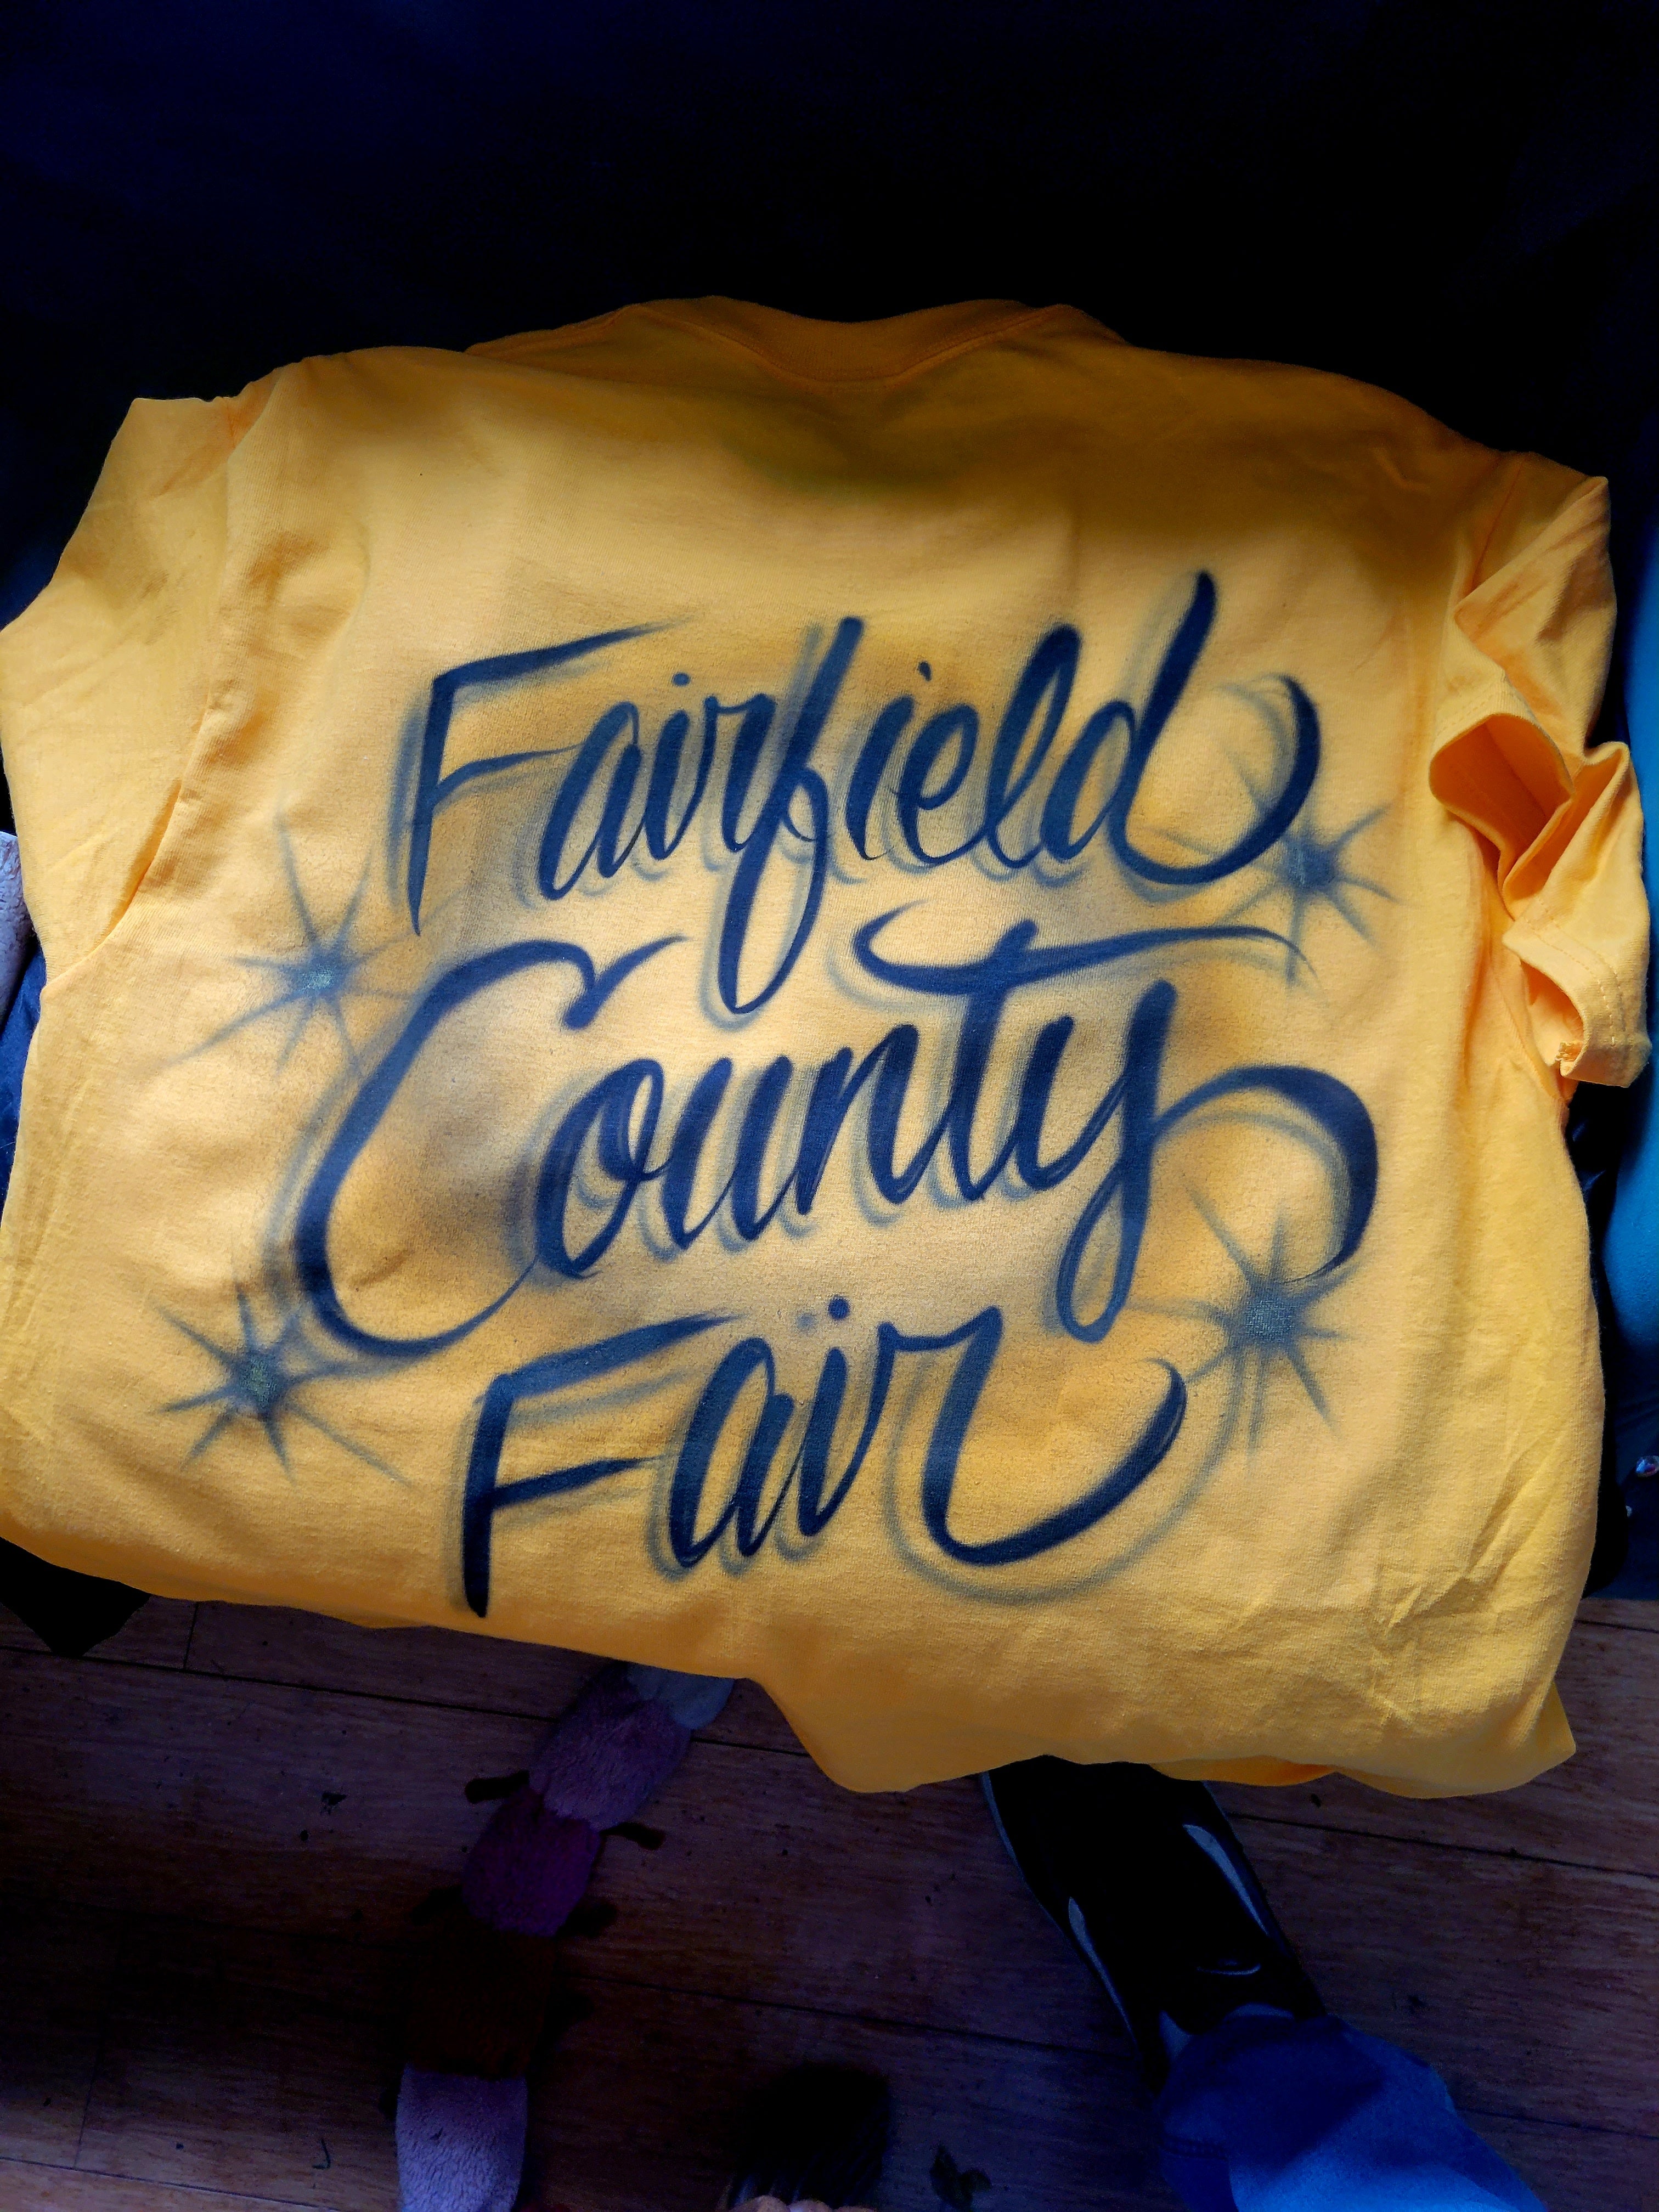 Fairfield county shirt